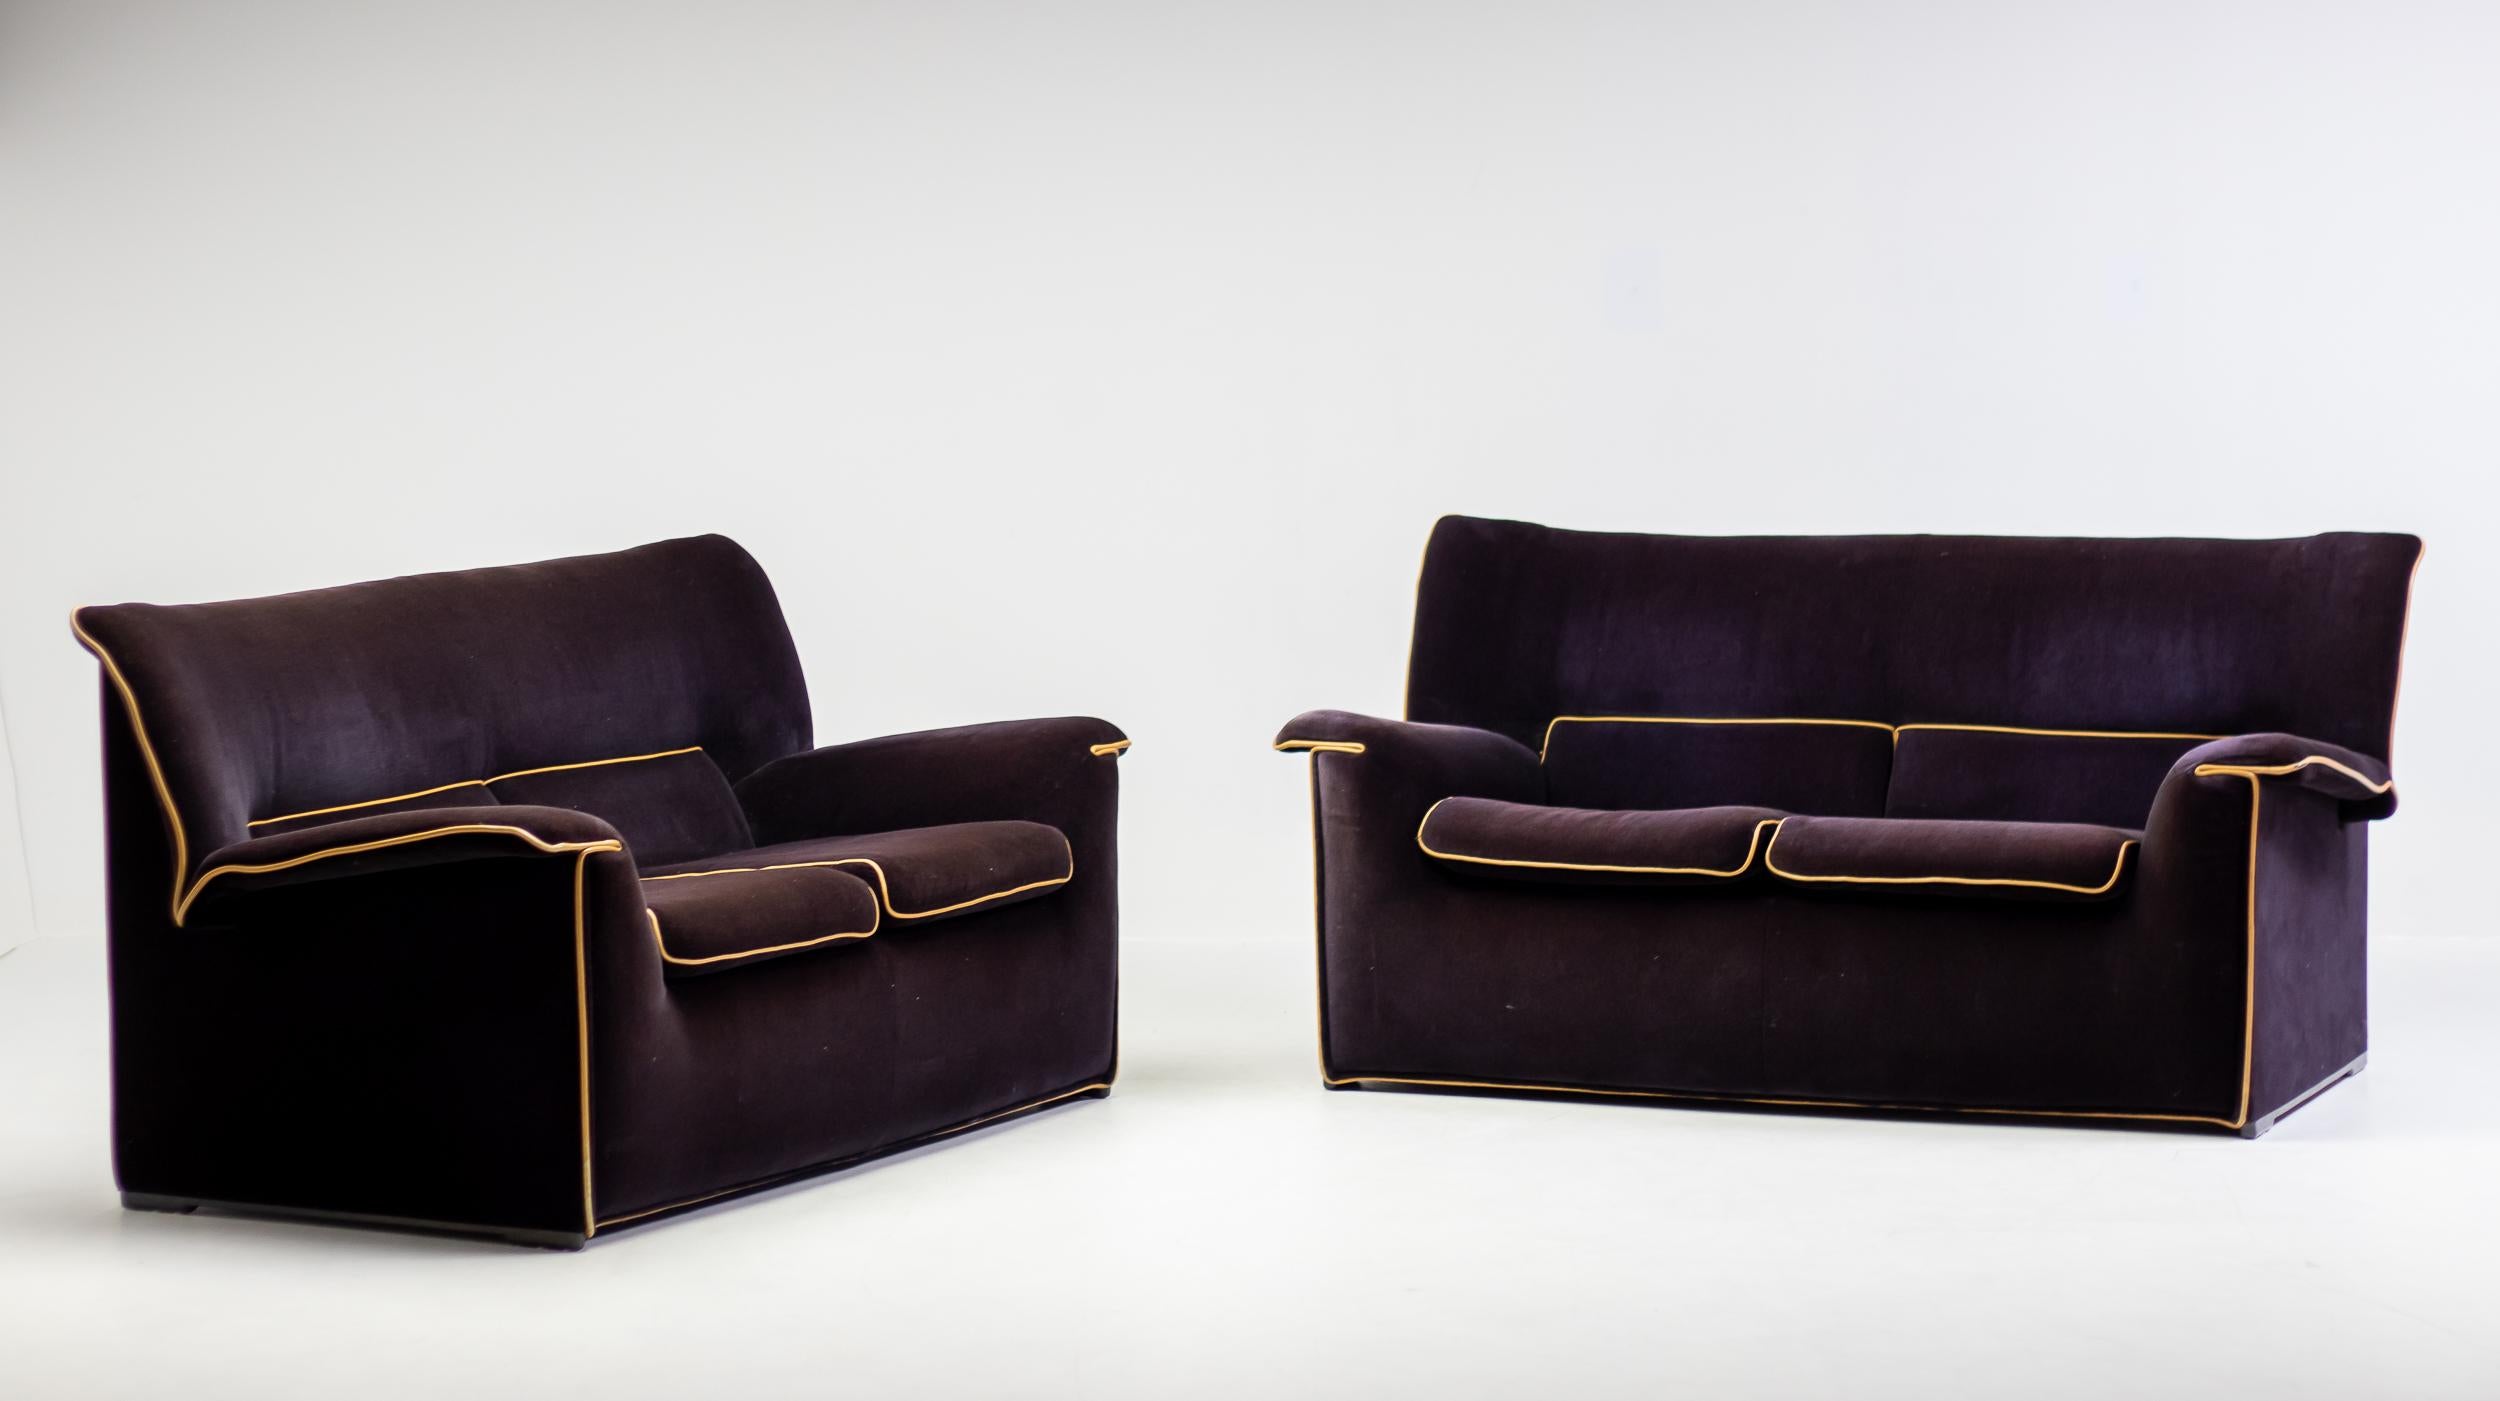 Lauriana 2-Sitzer-Sofa, entworfen 1978 von Afra & Tobia Scarpa für B&B Italia. 
Abnehmbare Samtpolsterung in Aubergine mit Keder in Kamelhaar. Montiert auf einem Stahlrahmen mit Kunststofffüßen. 
Zwei lose Sitzkissen. Guter Zustand mit minimalen